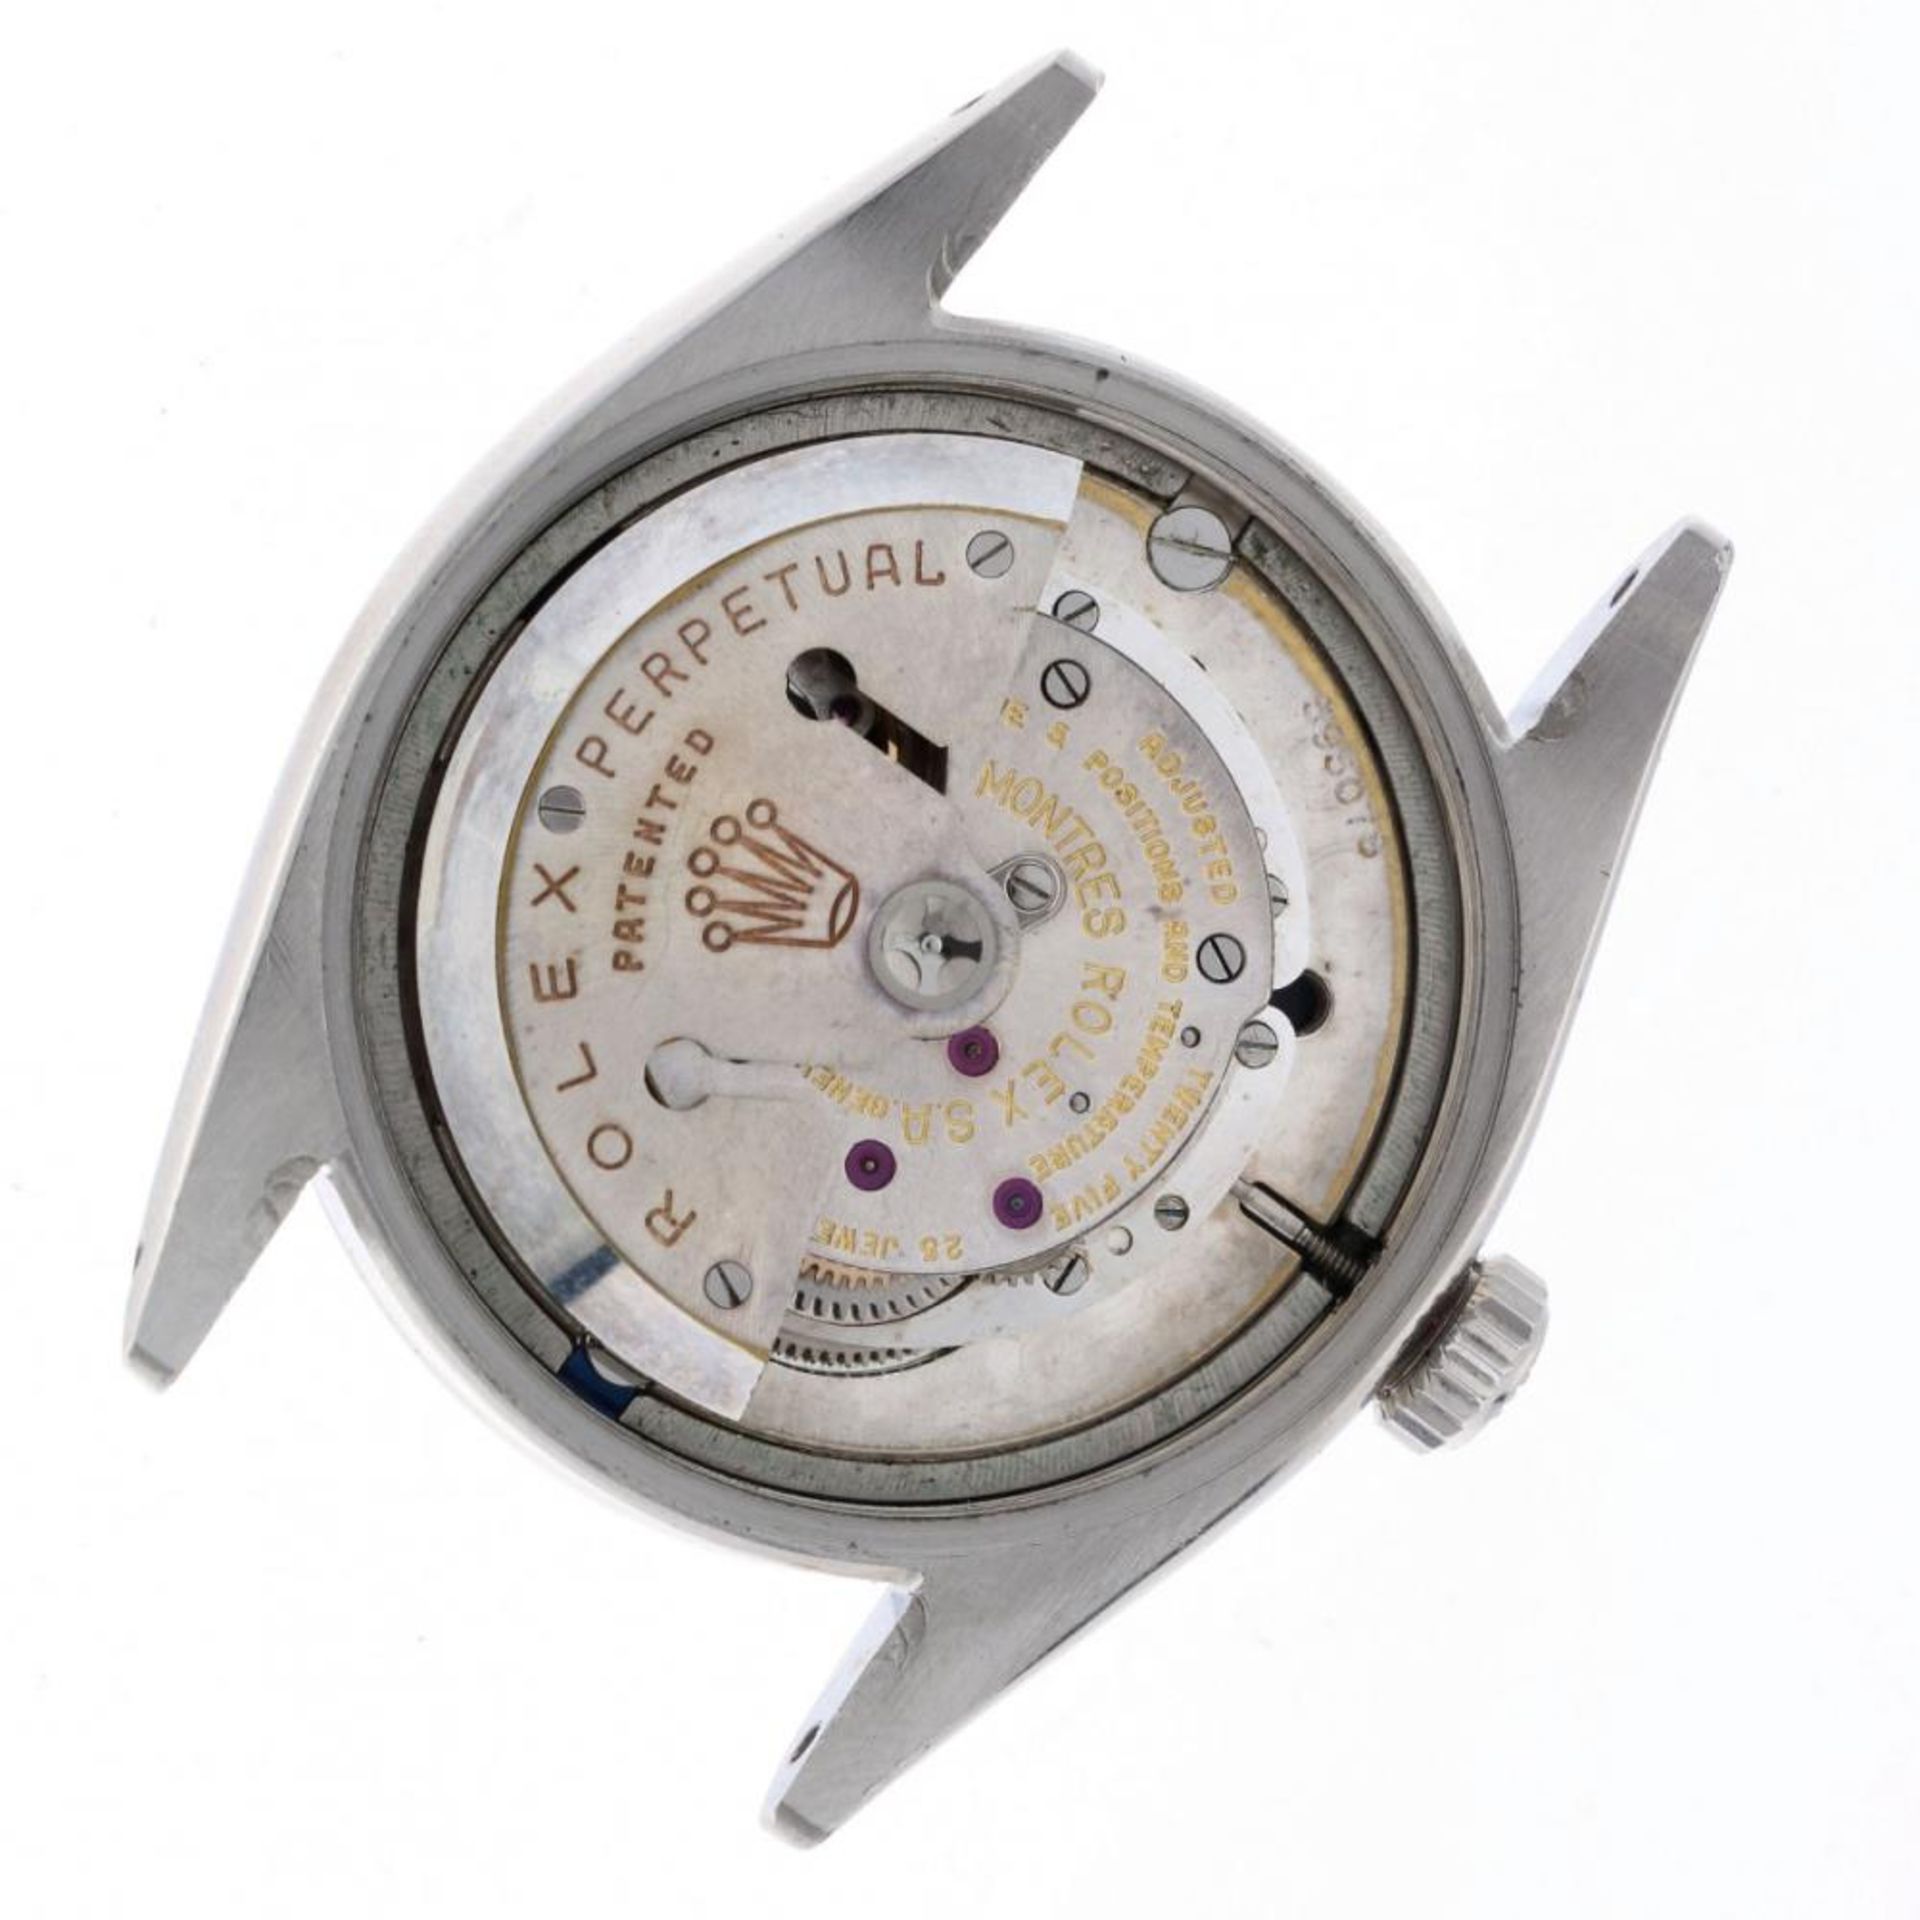 Rolex Explorer Red Depth Rating 6610 - Men's watch - 1956. - Image 9 of 10